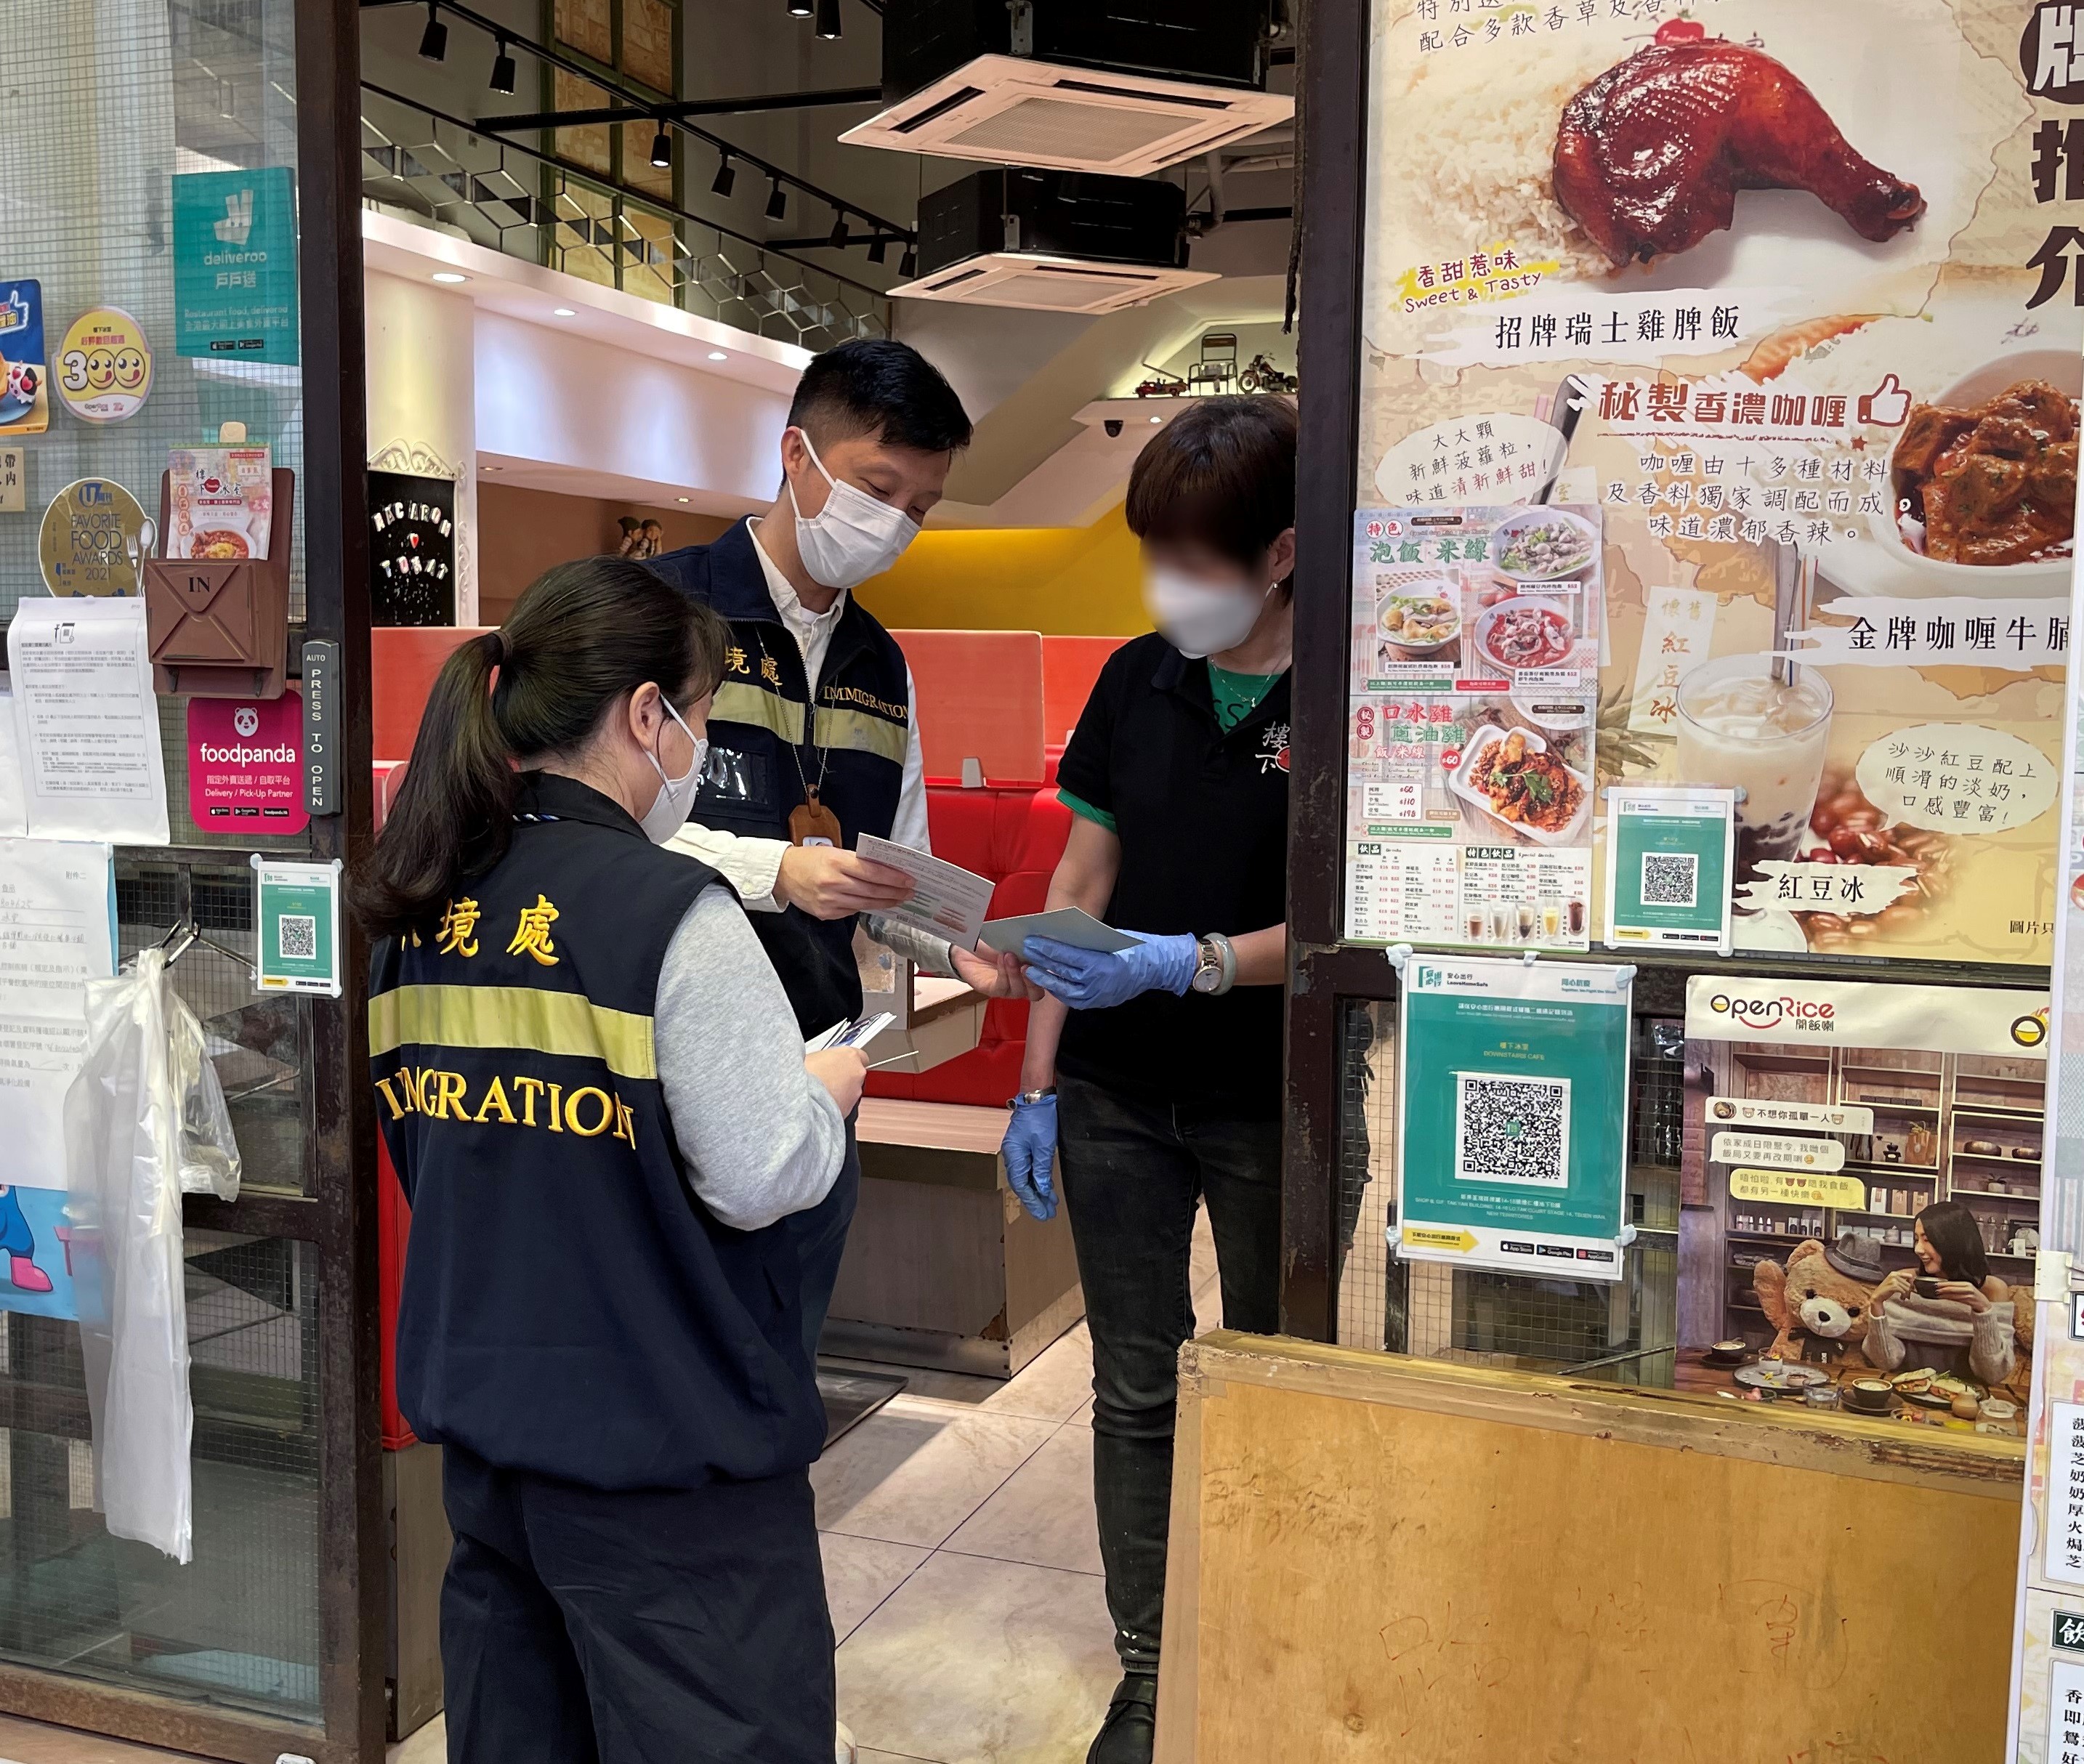 入境事務處人員向食肆職員派發「切勿聘用非法勞工」的宣傳單張。